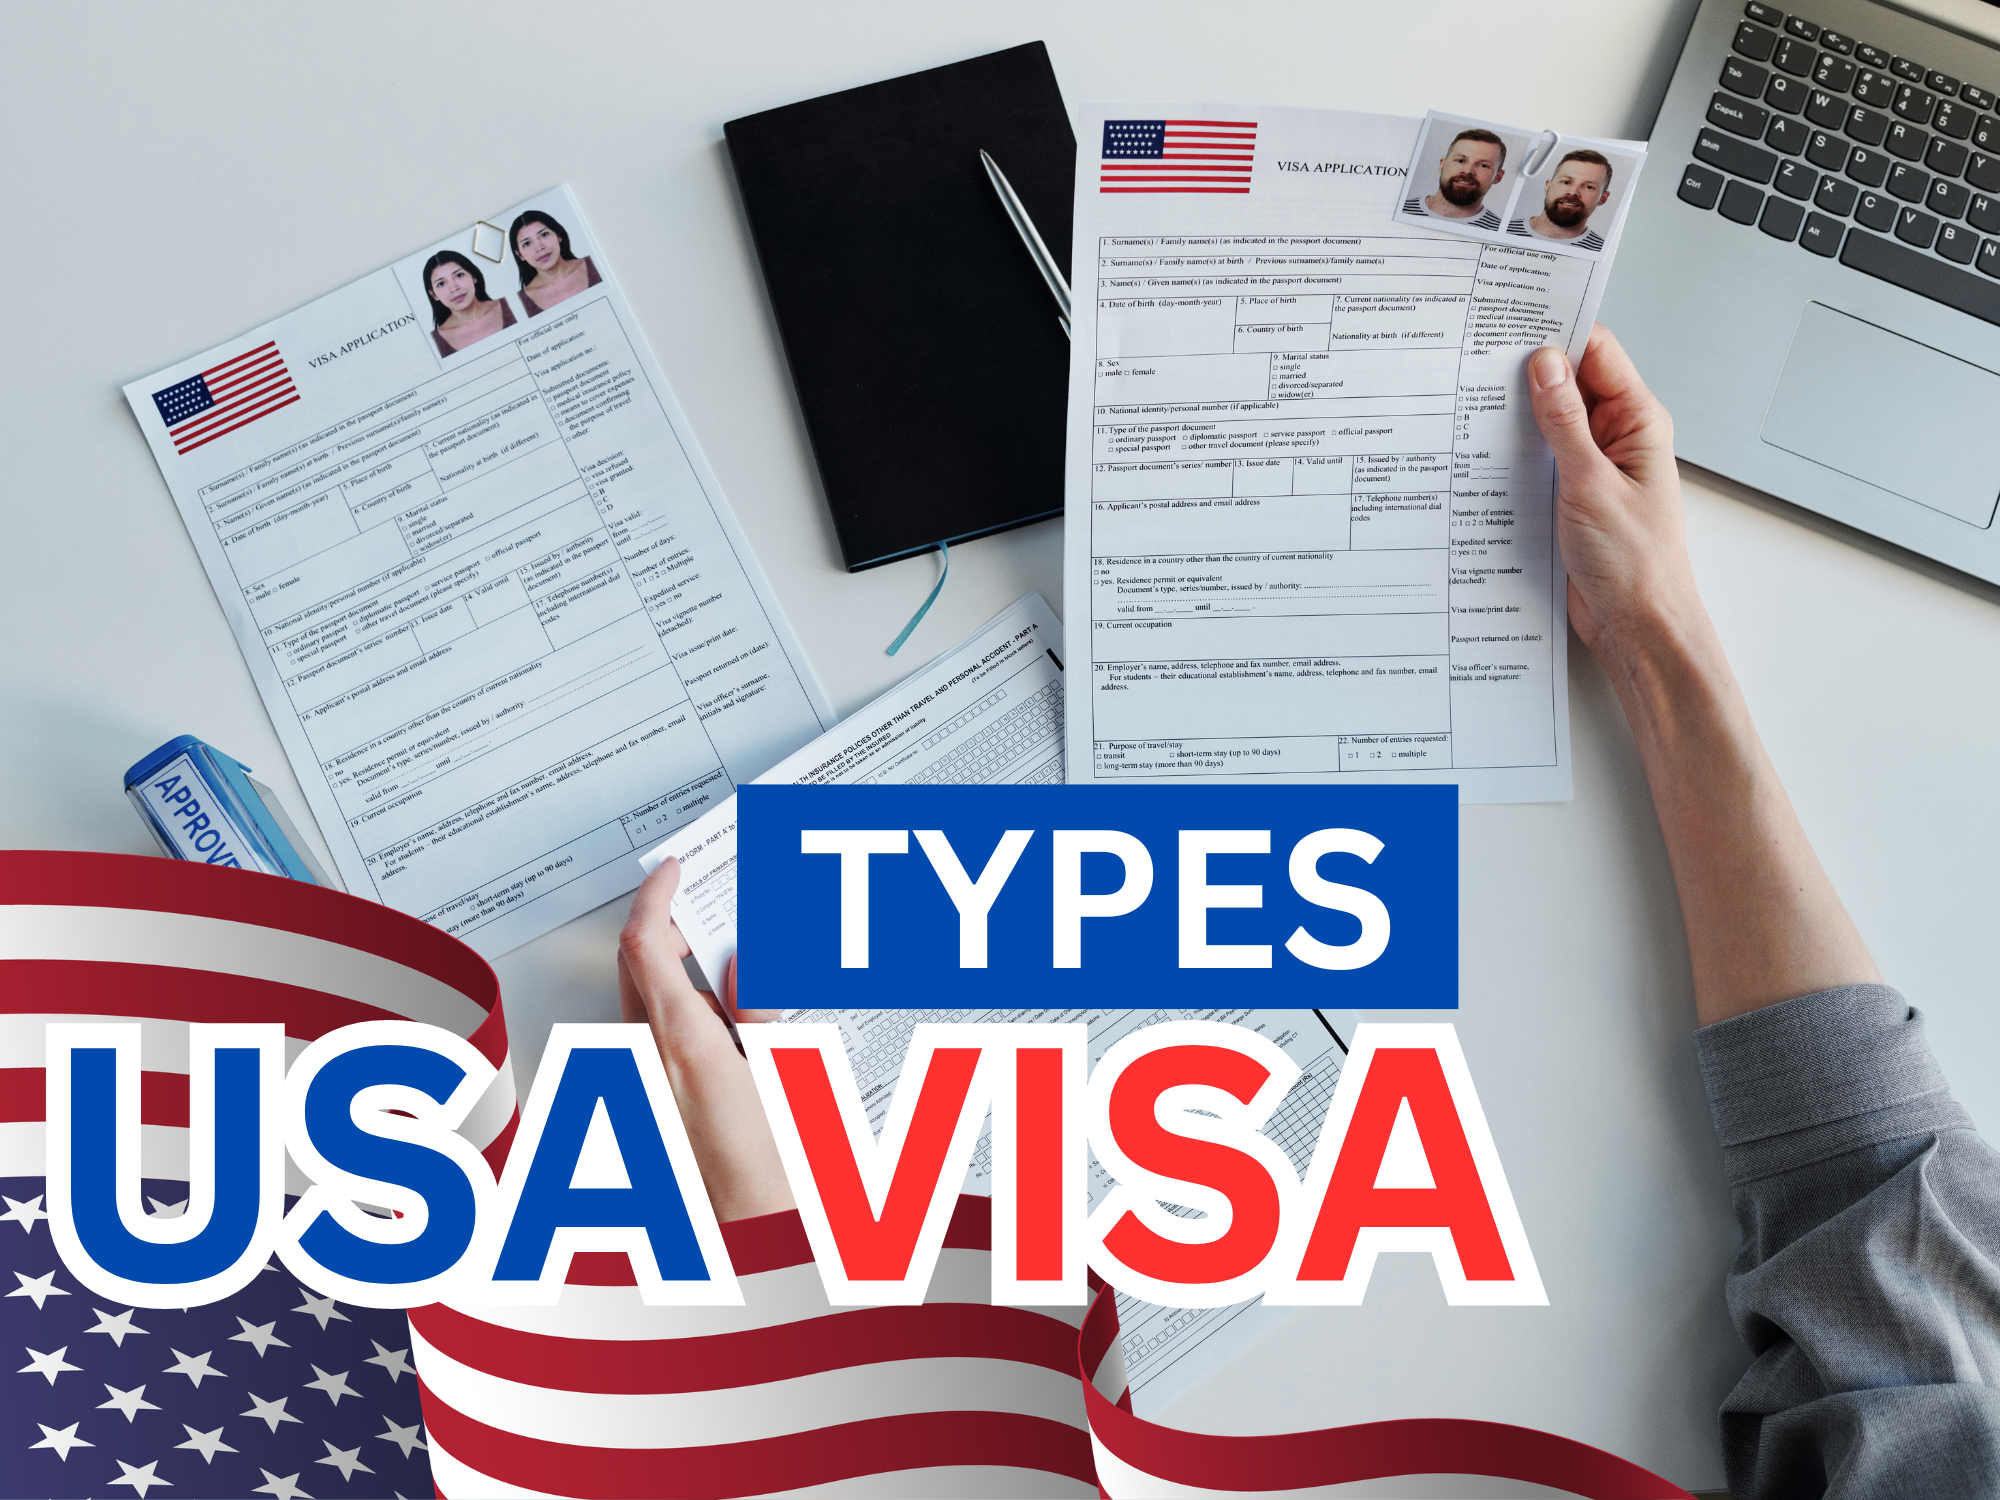 فئات التأشيرات الأمريكية الأكثر شيوعًا للمقيمين في الإمارات